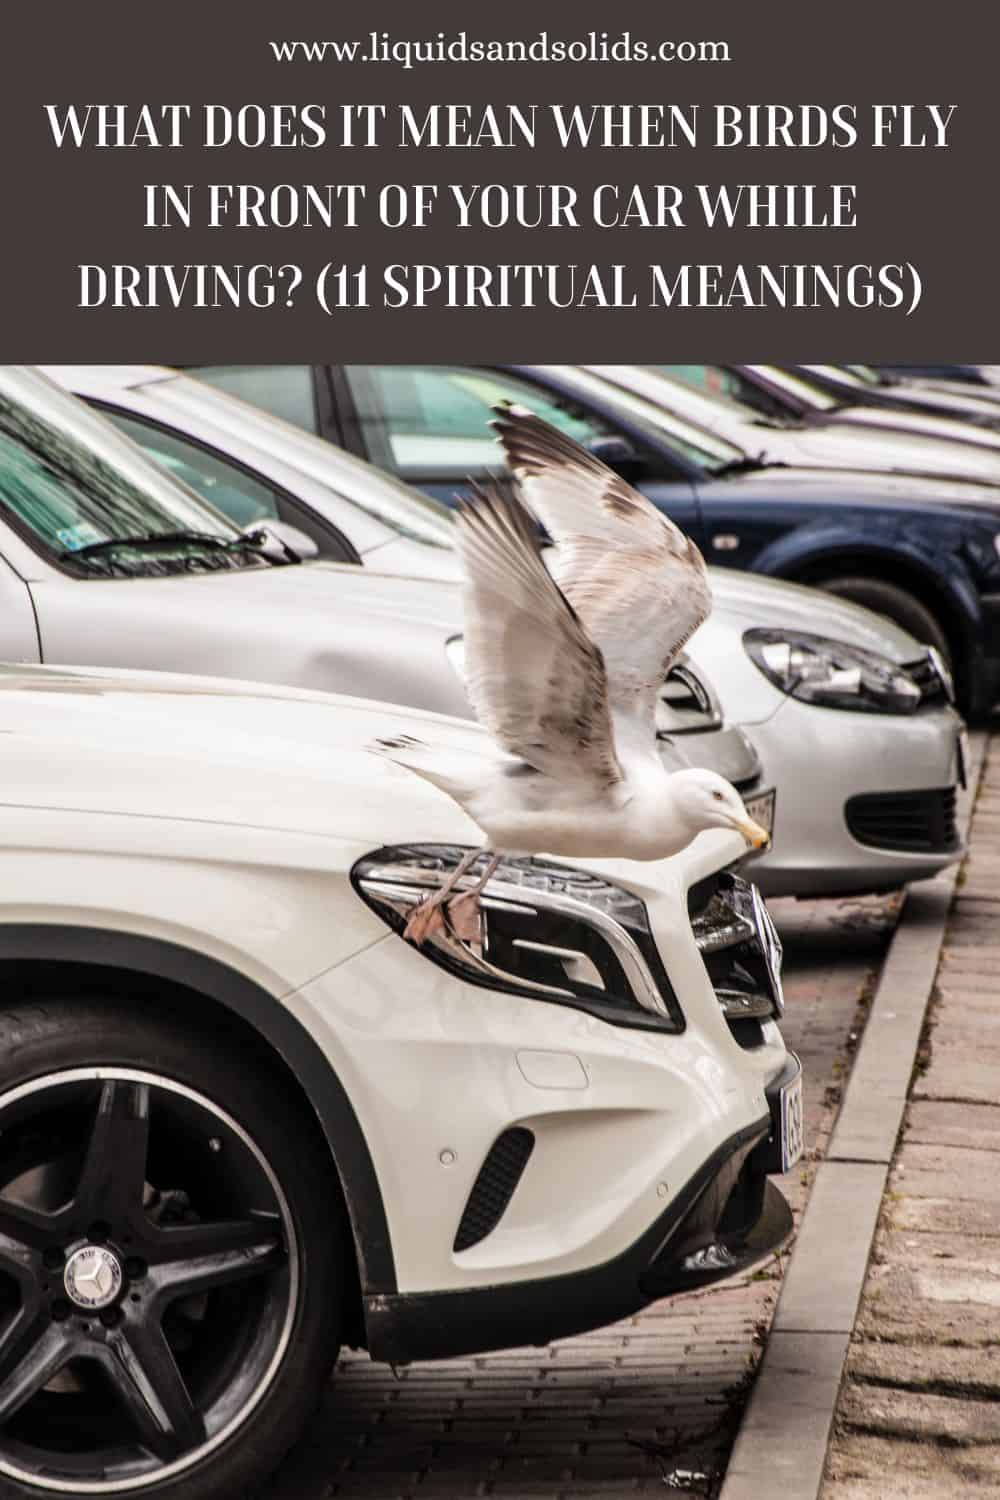  Mida tähendab see, kui linnud lendavad teie auto ees sõidu ajal? (11 vaimset tähendust)